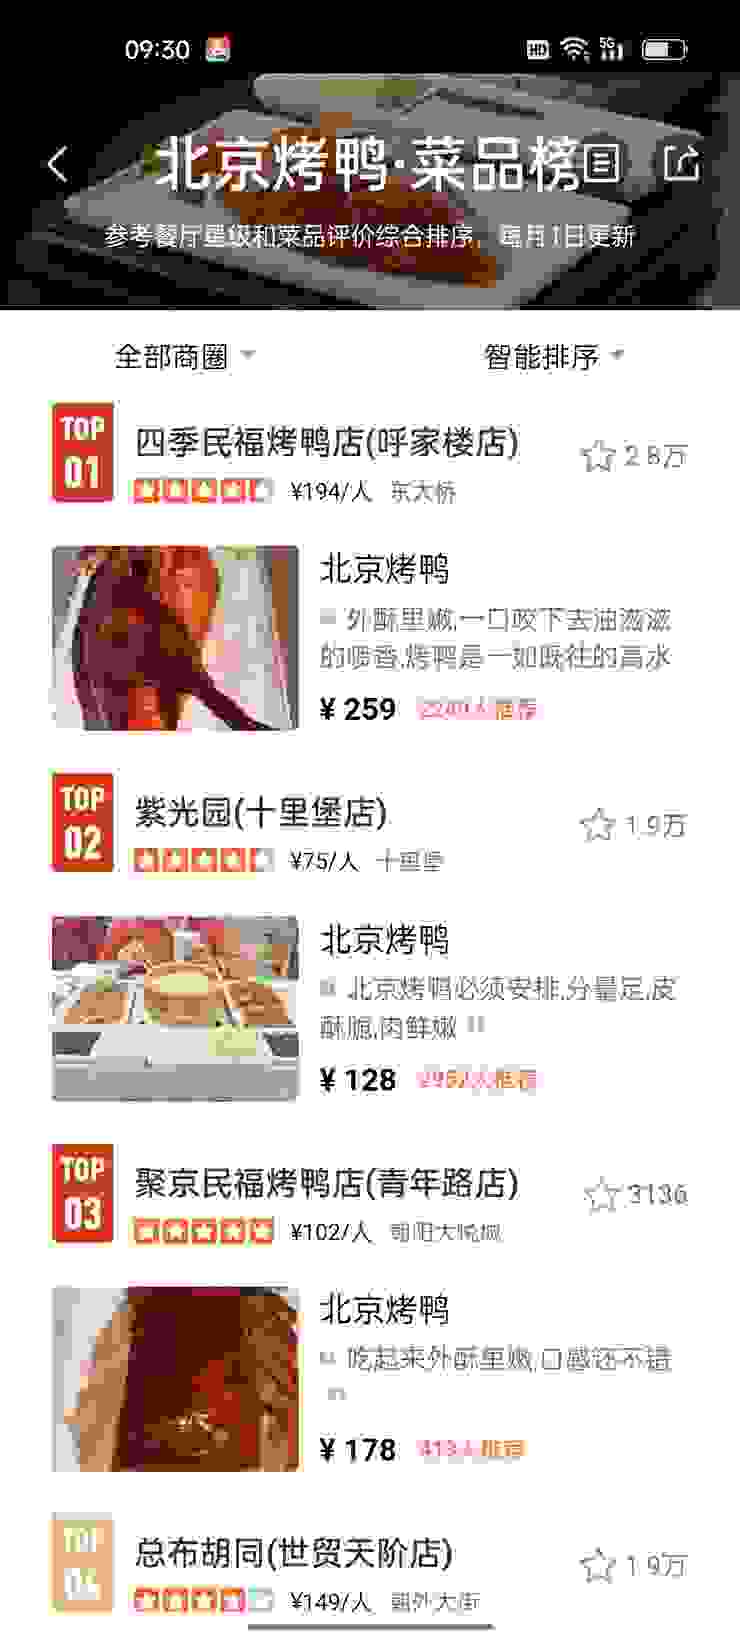 大眾點評上的北京烤鴨排行榜